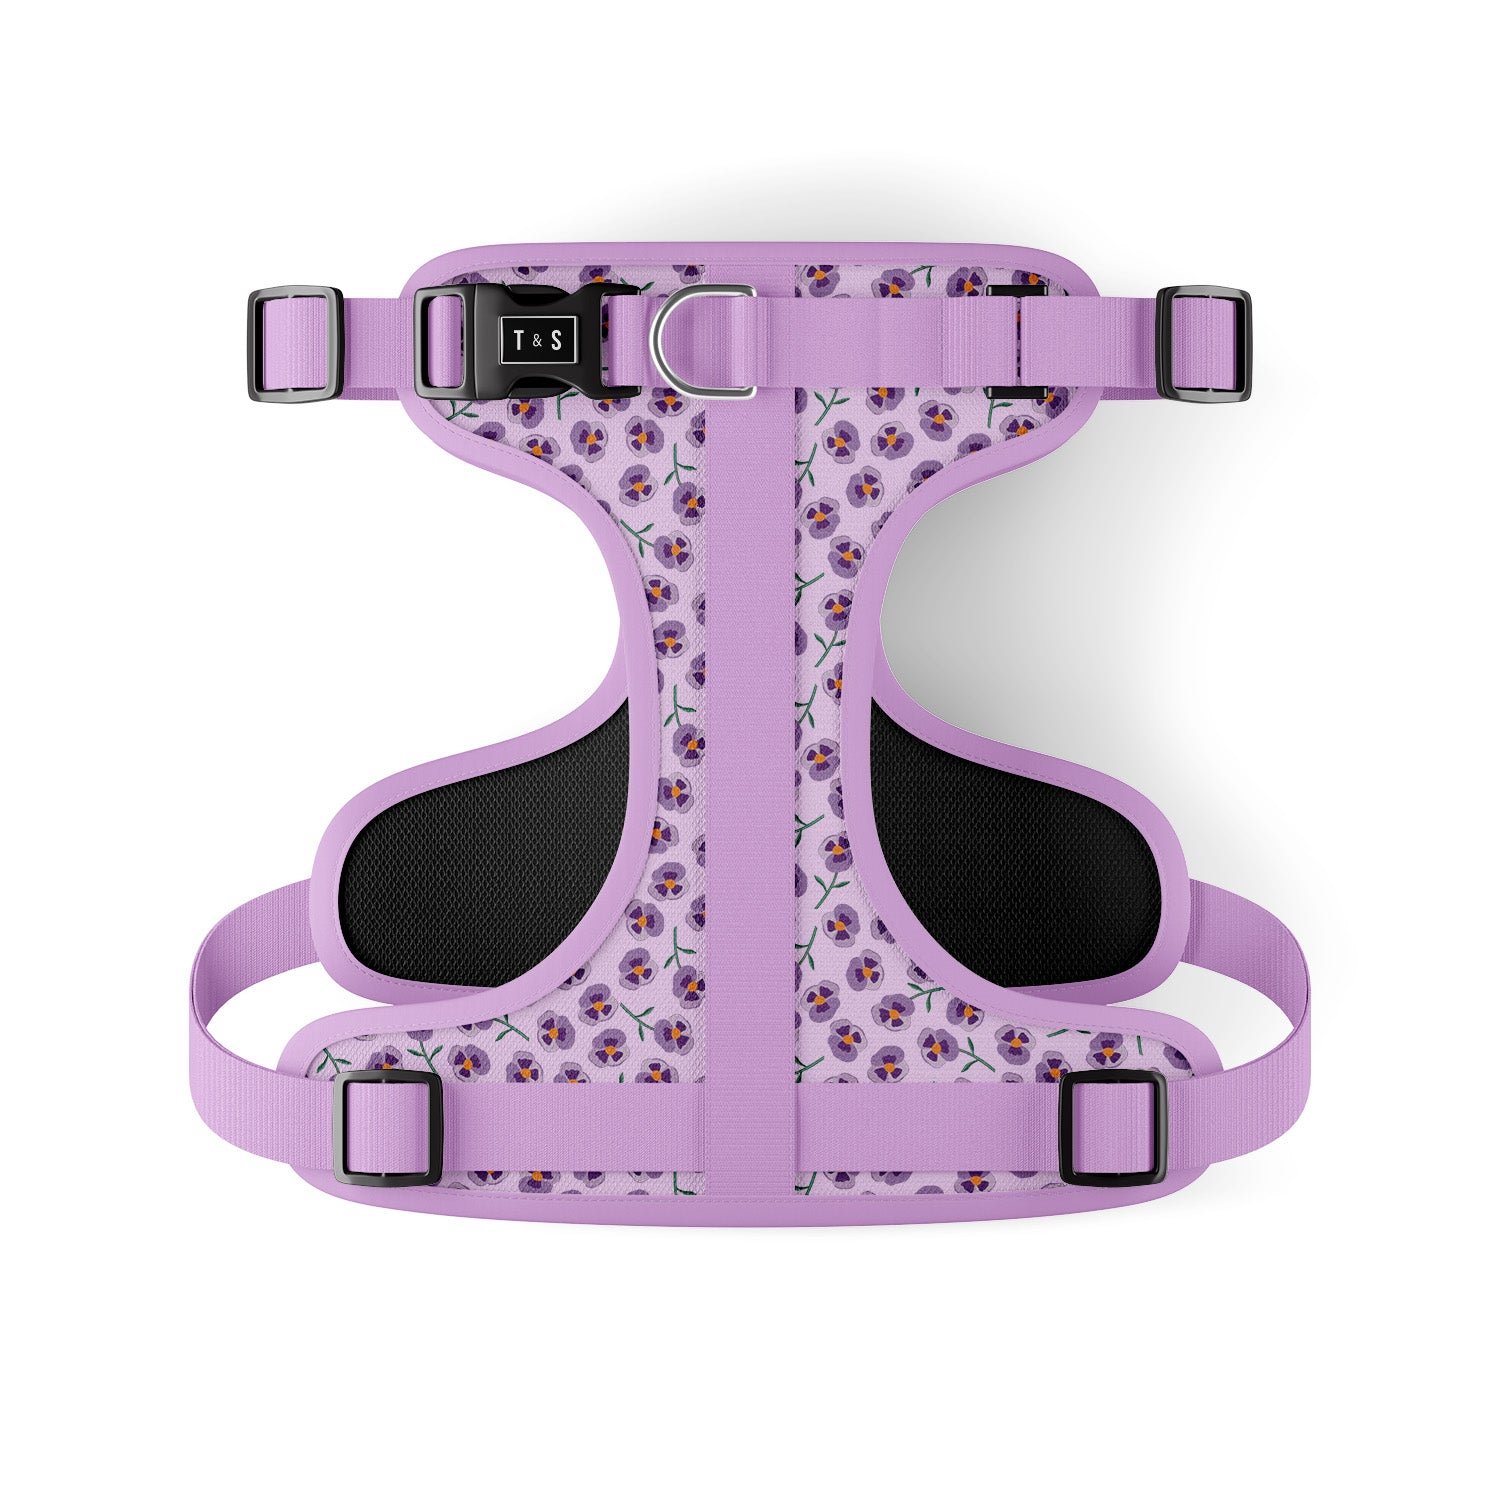 Adjustable dog harness - Violet